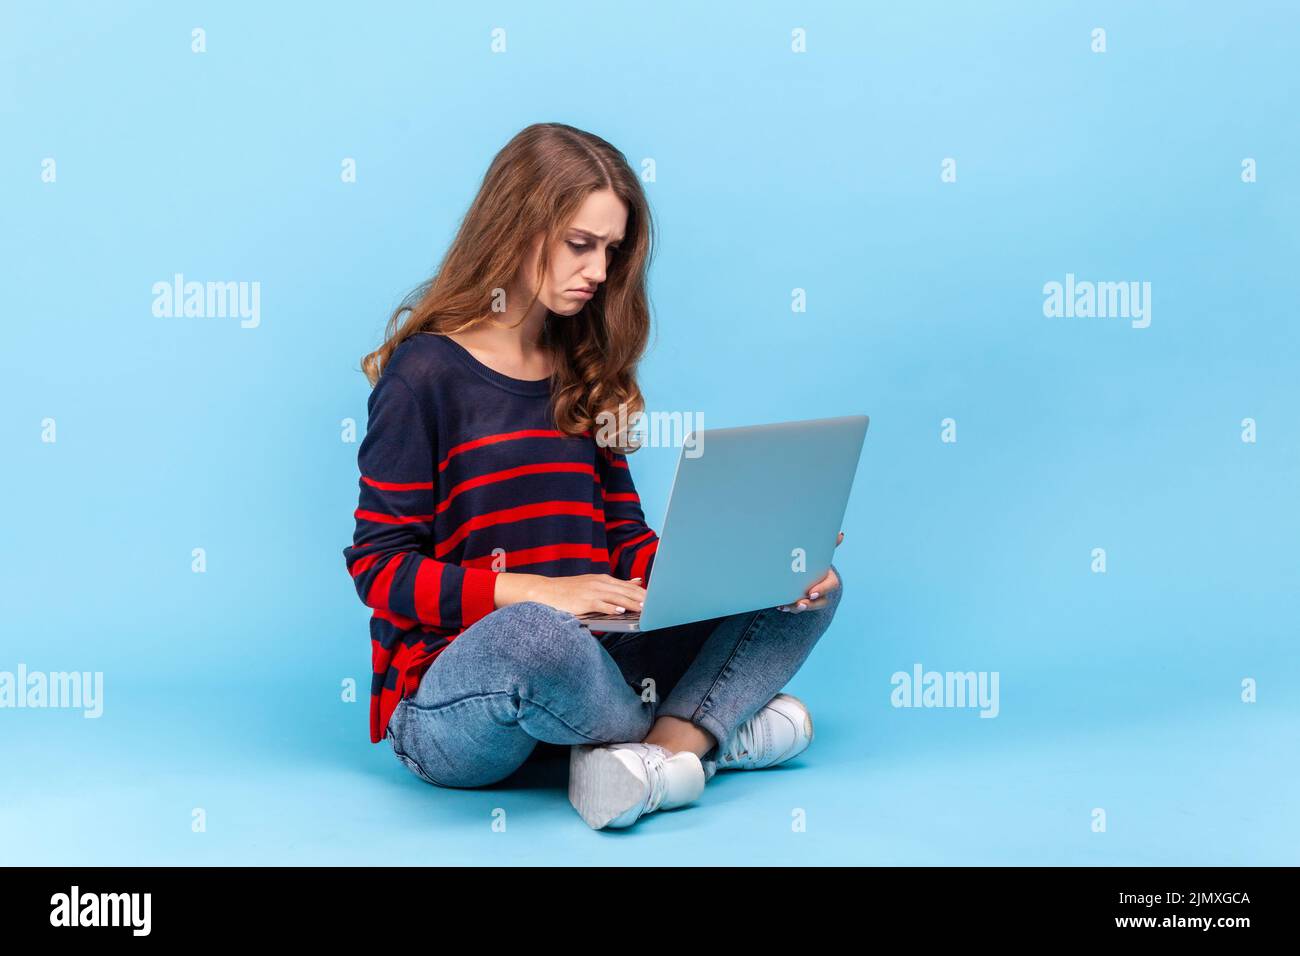 Retrato de una mujer molesta con un jersey a rayas de estilo informal, sentada sosteniendo el cuaderno de notas sobre las rodillas, mirando la pantalla, sintiendo tristeza. Estudio de interior aislado sobre fondo azul. Foto de stock